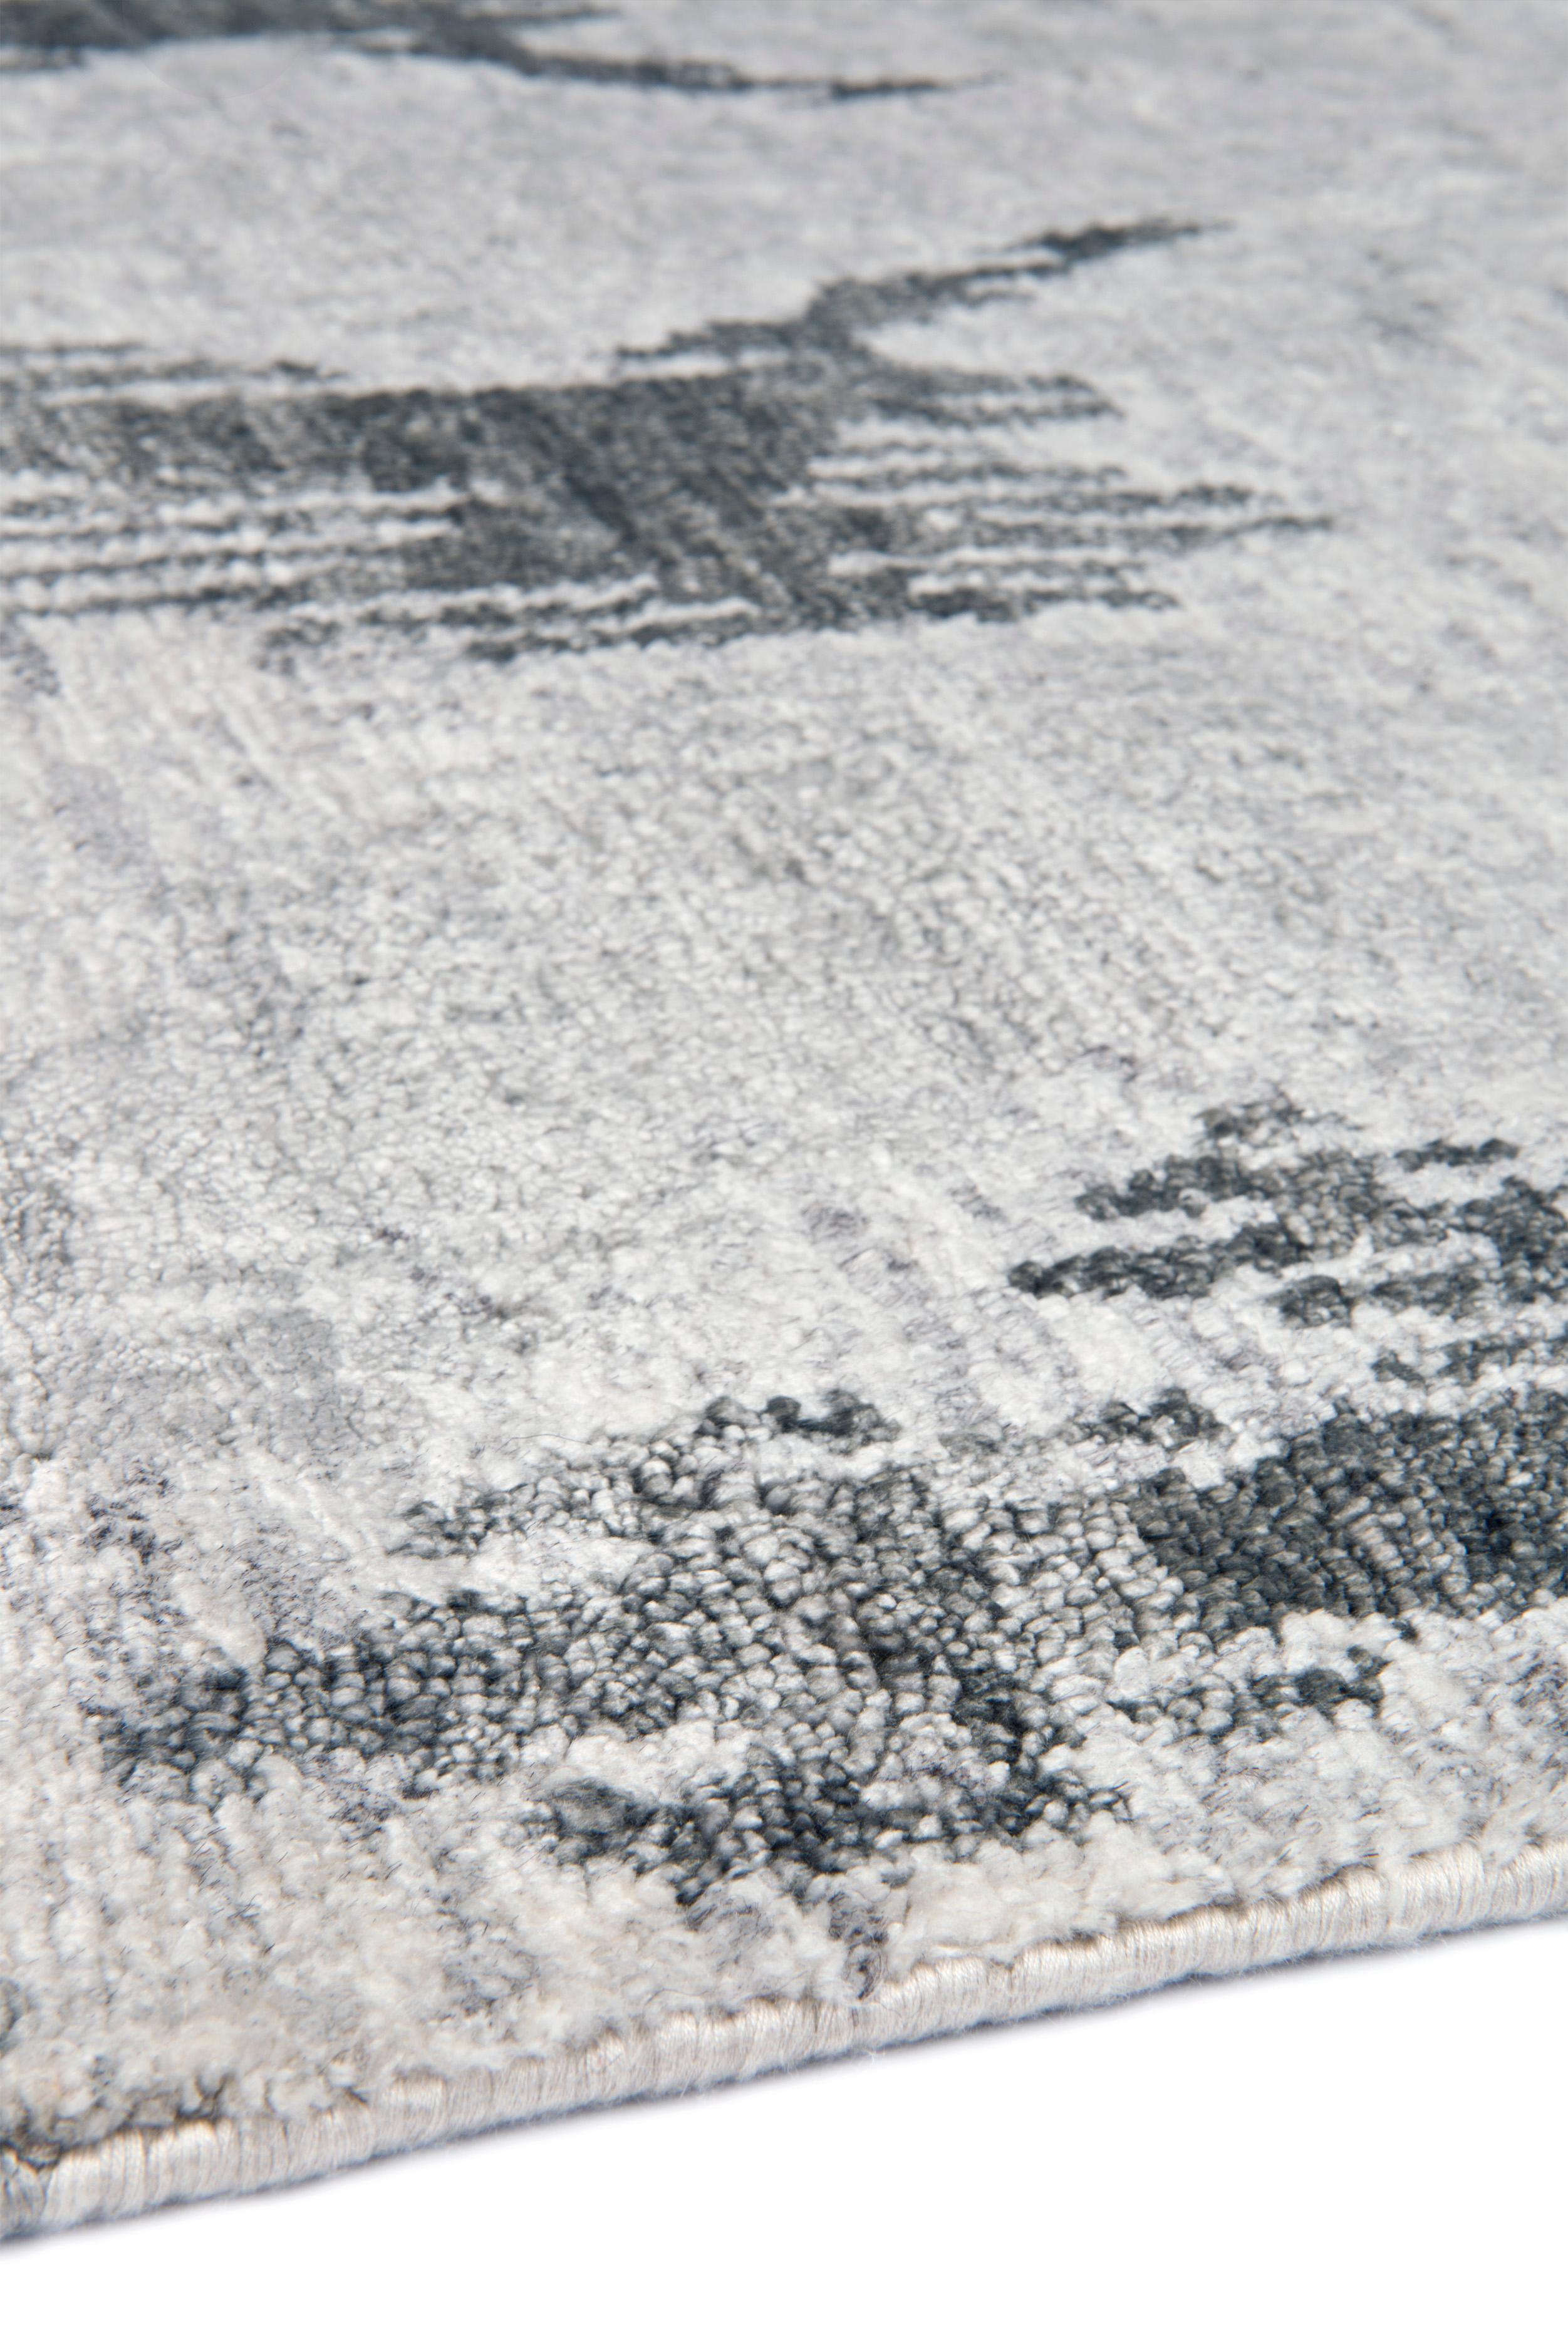 L'Ikat est une ancienne technique de teinture souvent appliquée aux tissus de soie, créant une géométrie floue distinctive qui est synonyme de tissu Ikat. Notre collection de tapis Ikat est nouée à la main à l'aide d'une fibre tirée de la plante de